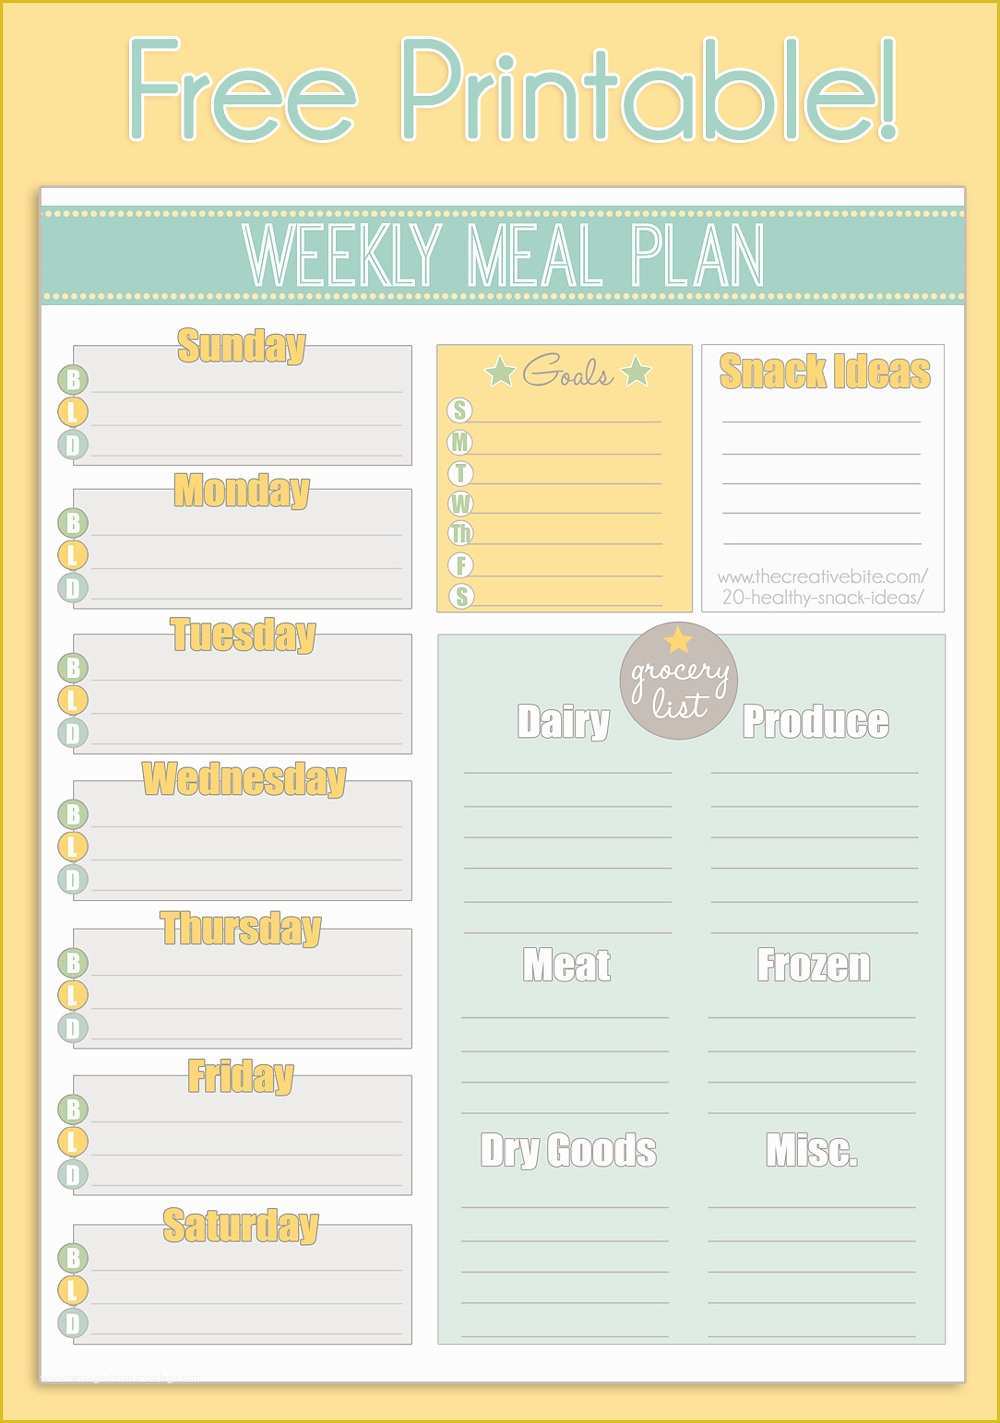 Free Weekly Meal Planner Template Of Free Printable Weekly Meal Planner Calendar